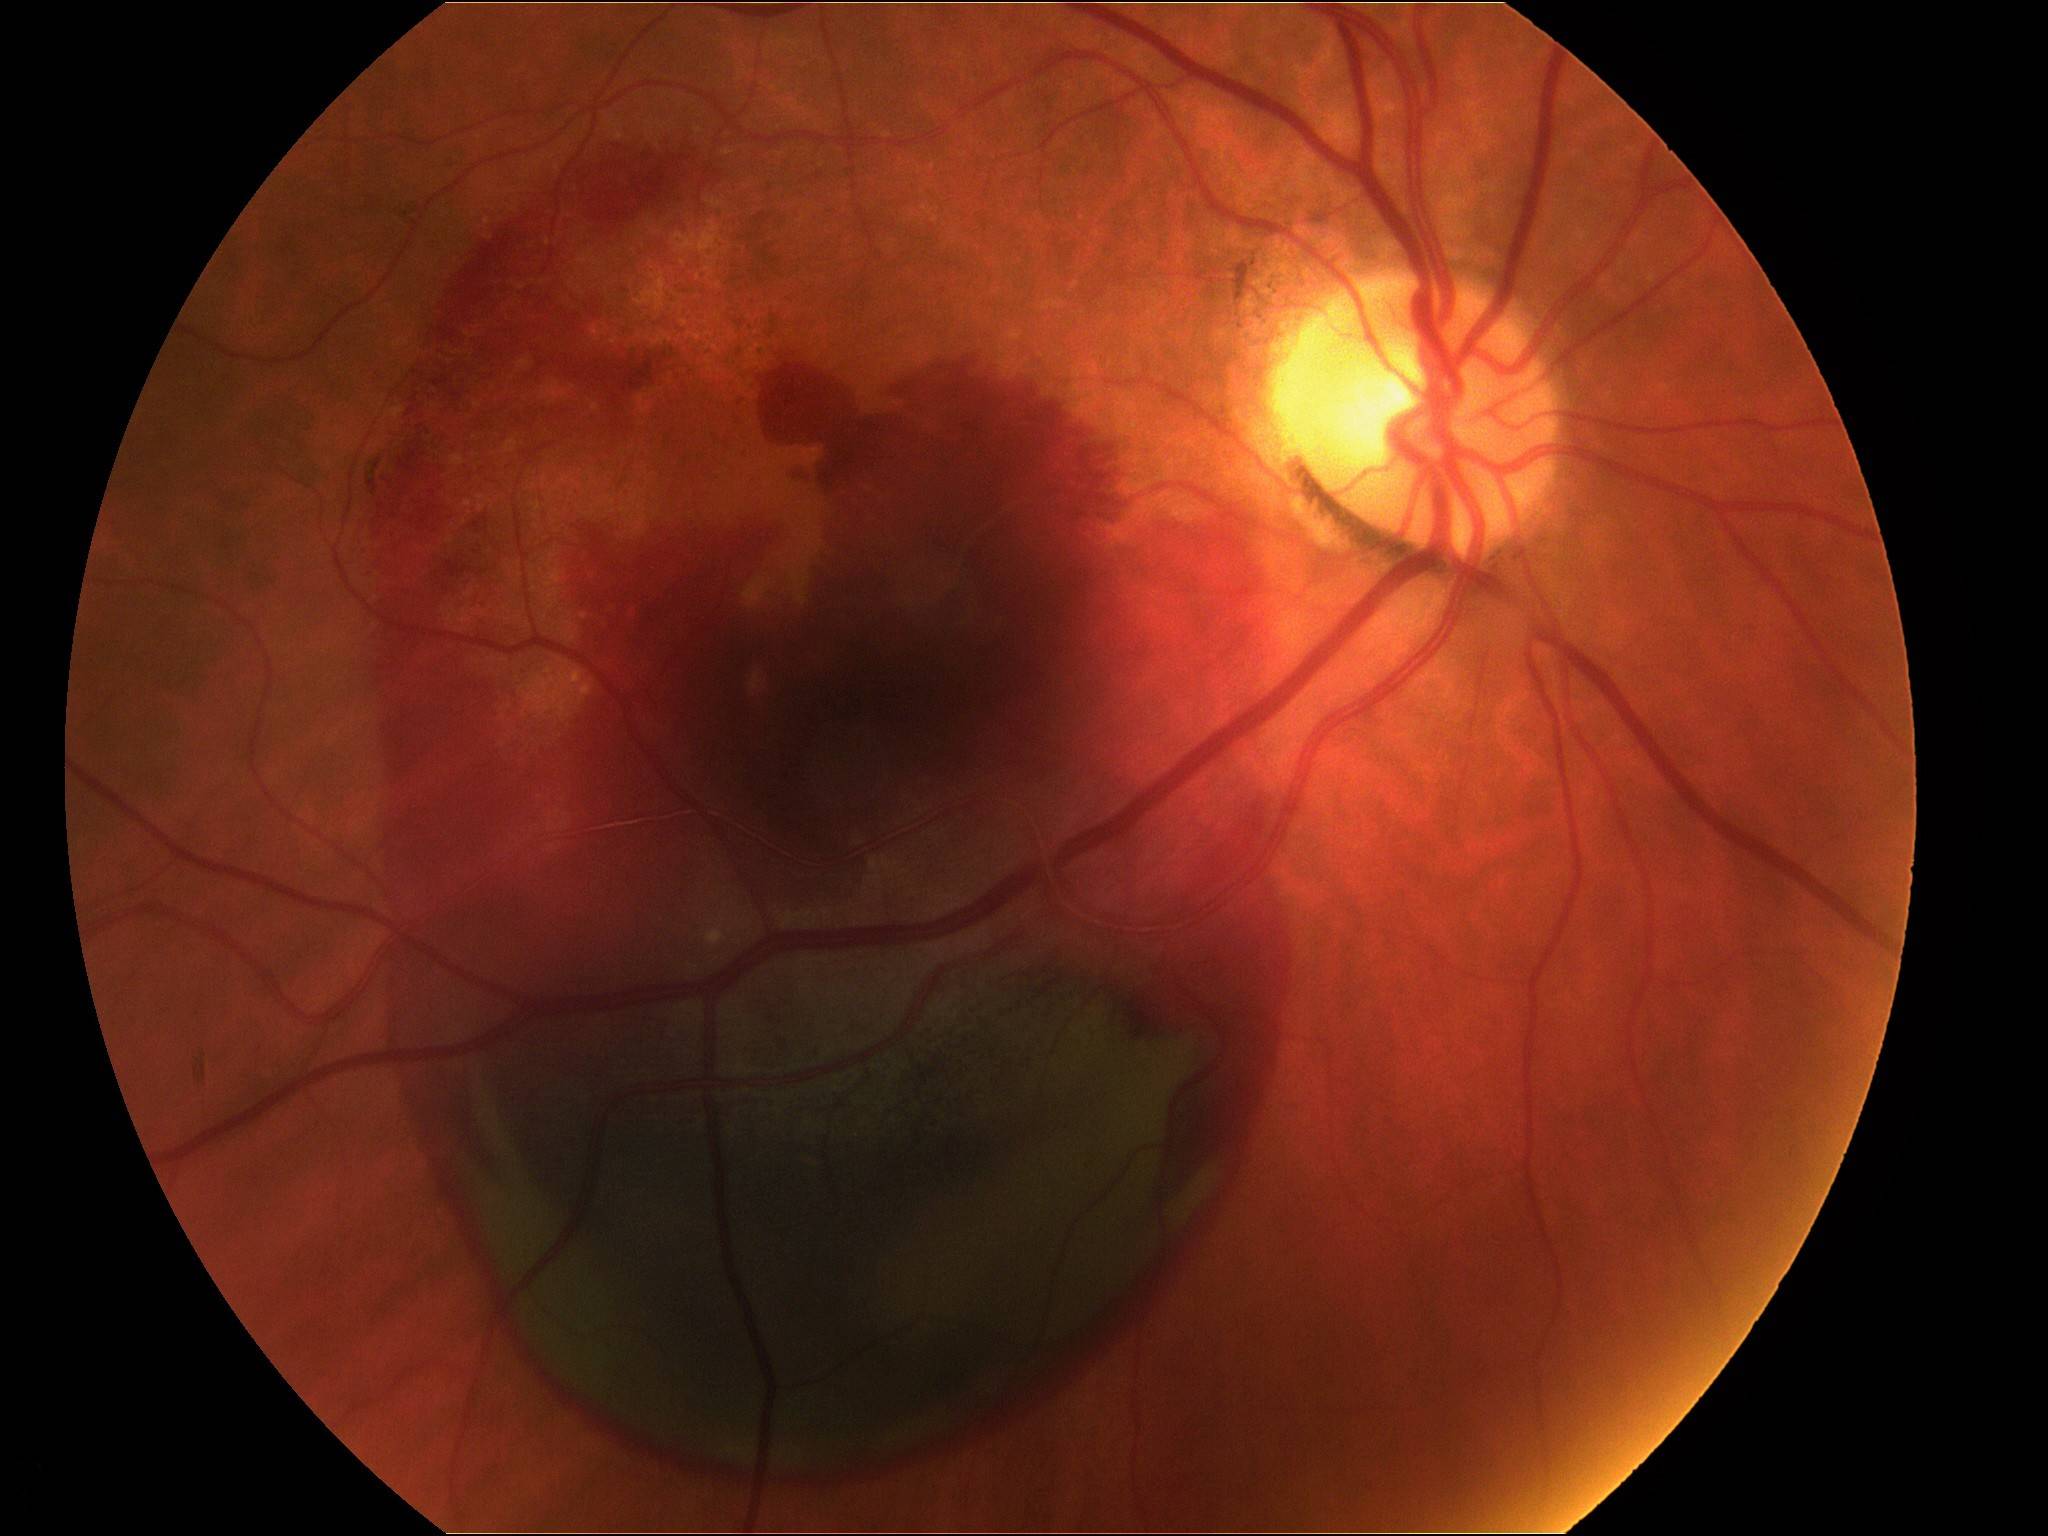 Дистрофия сетчатки глаза - что это такое, причины, симптомы и диагностика дегенерации сосудистой оболочки глазного дна